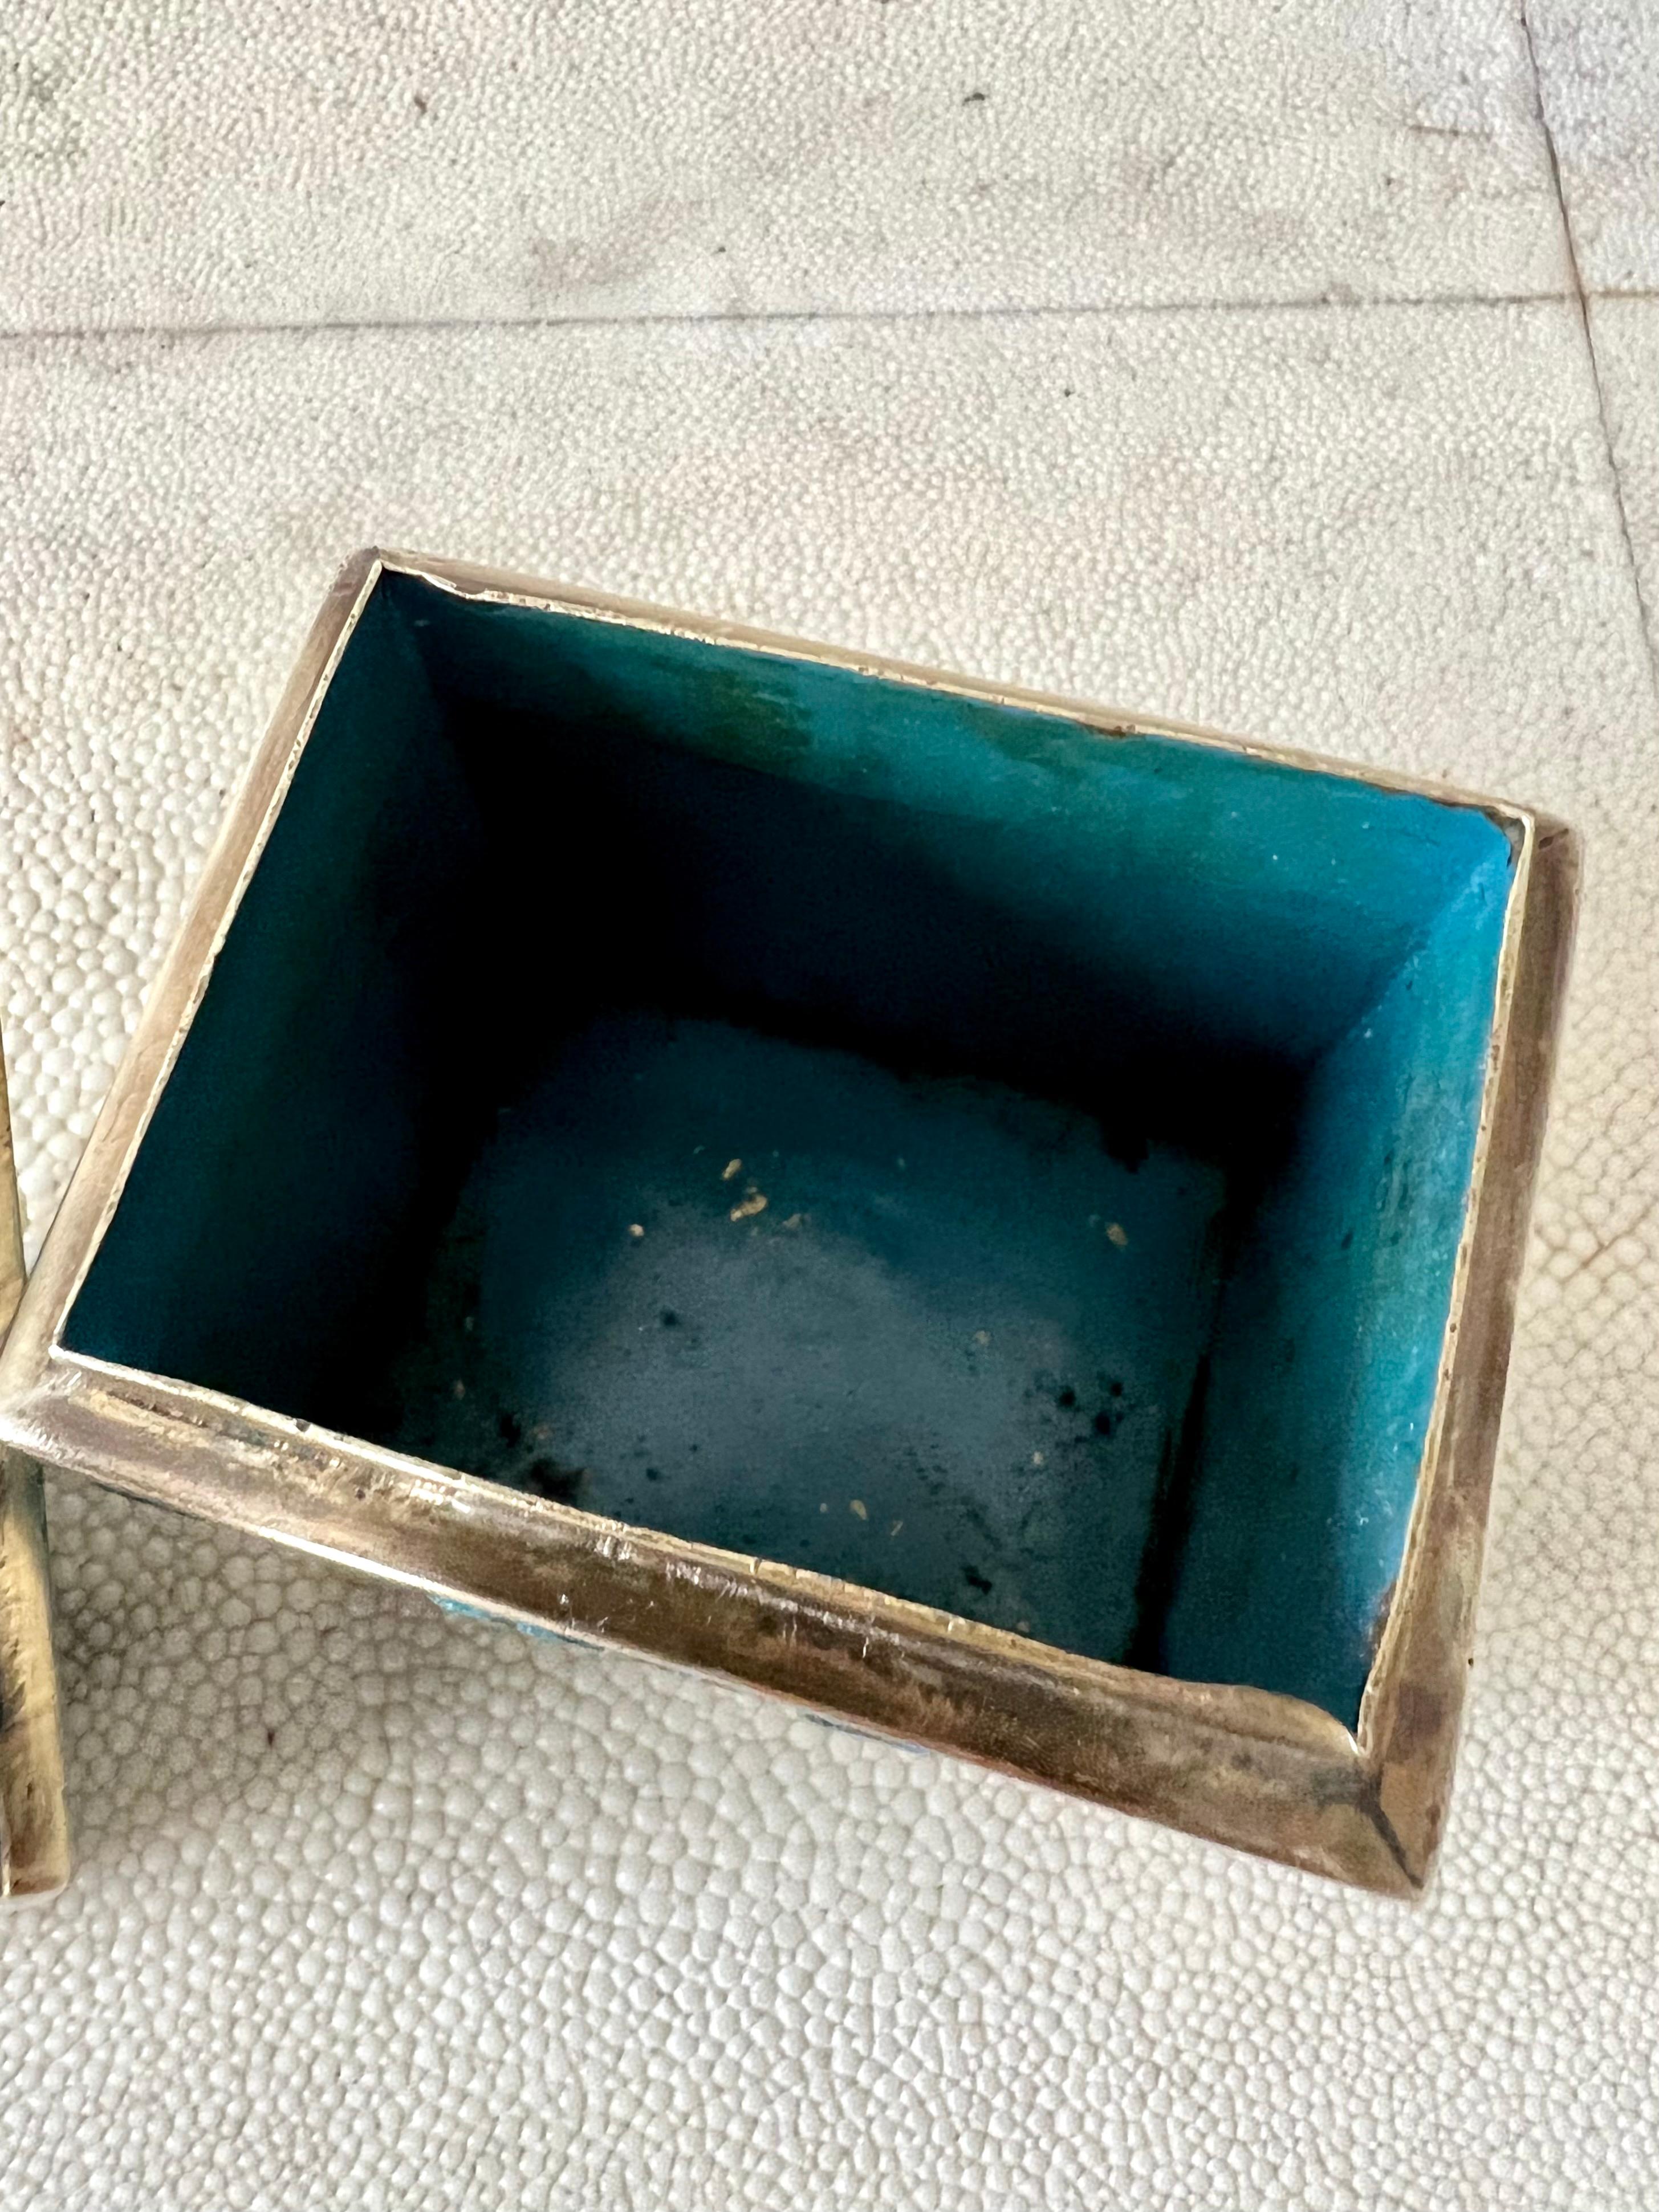 Boîte à couvercle en laiton et tesselles de verre mosaïque de couleur turquoise/bleue, fabriquée à la main au Mexique par le célèbre artiste mexicain Salvador Teran, vers les années 1950. Le couvercle et les côtés sont ornés de symboles en laiton